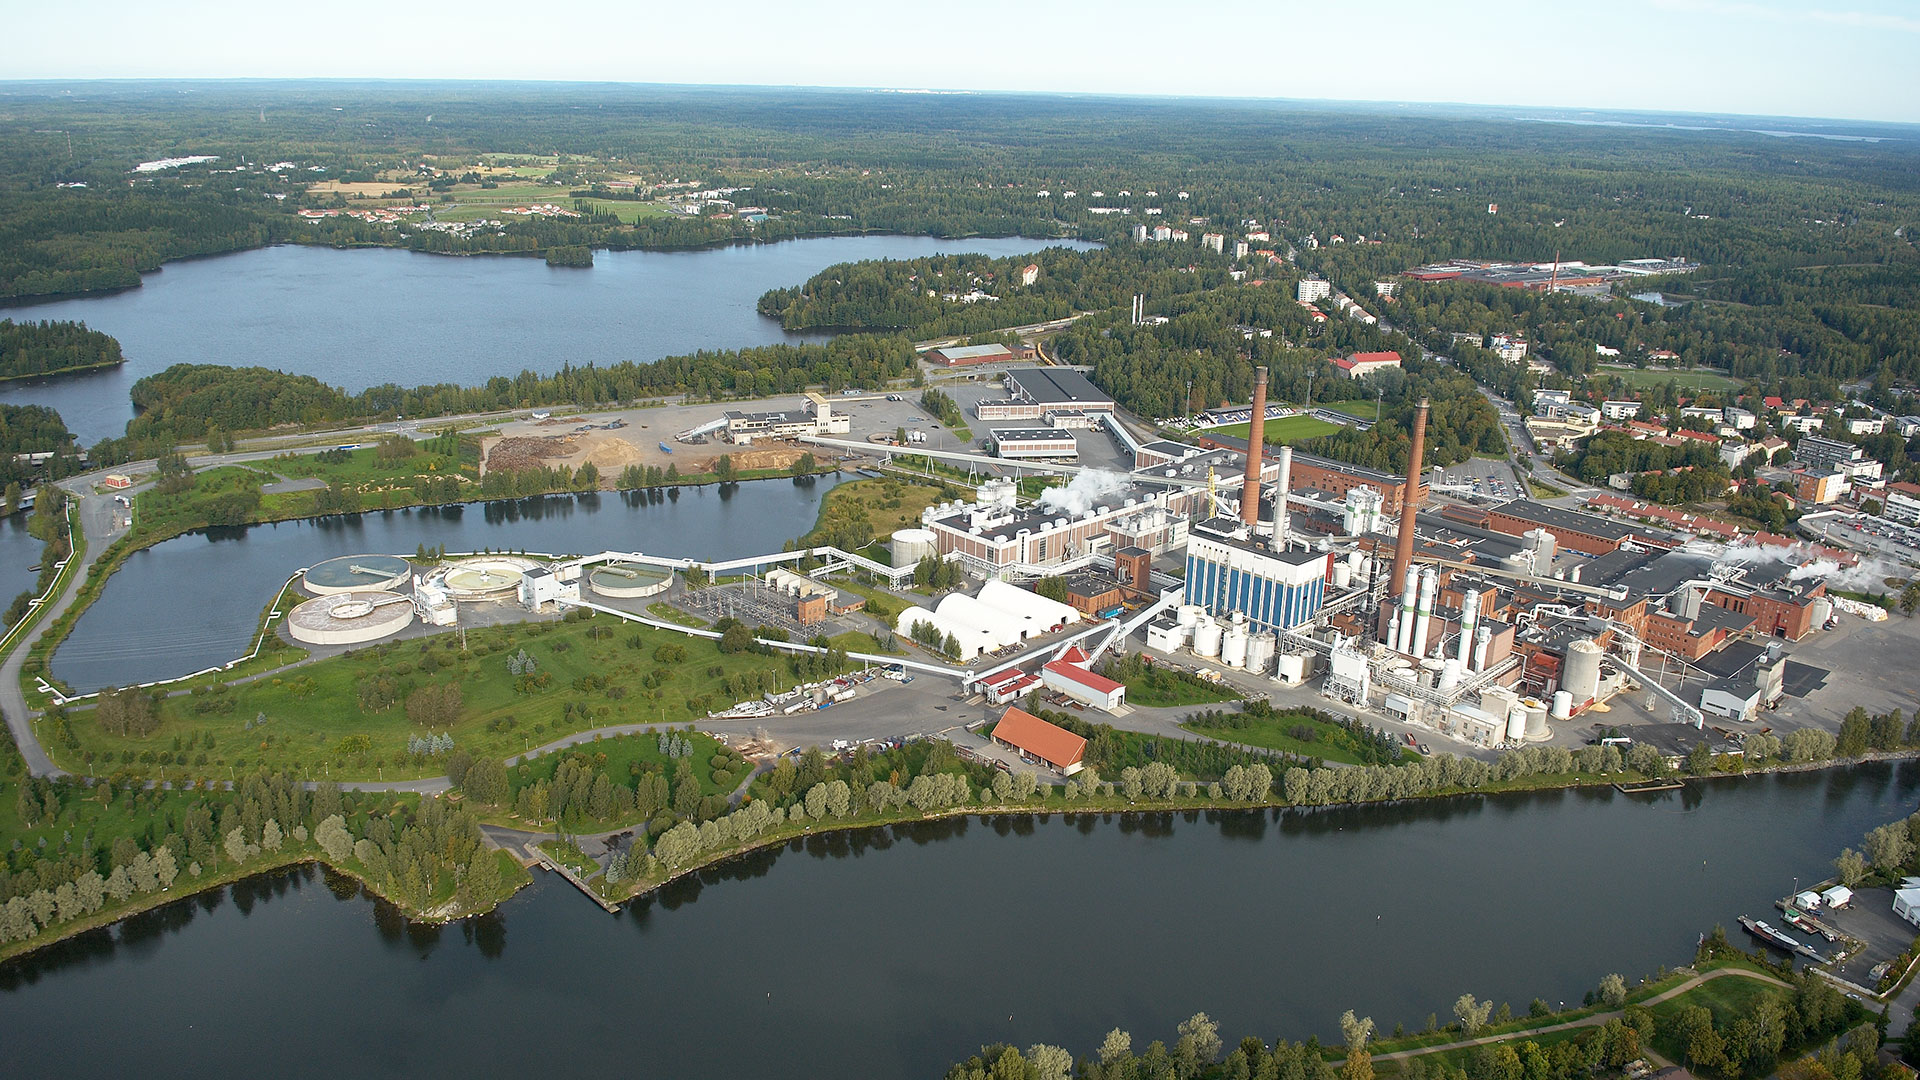 UPM Tervasaaressa investoinnit tuotannon prosesseihin parantavat höyryntuotannon hyötysuhdetta ja lämmön talteenottoa sekä vähentävät CO2 päästöjä